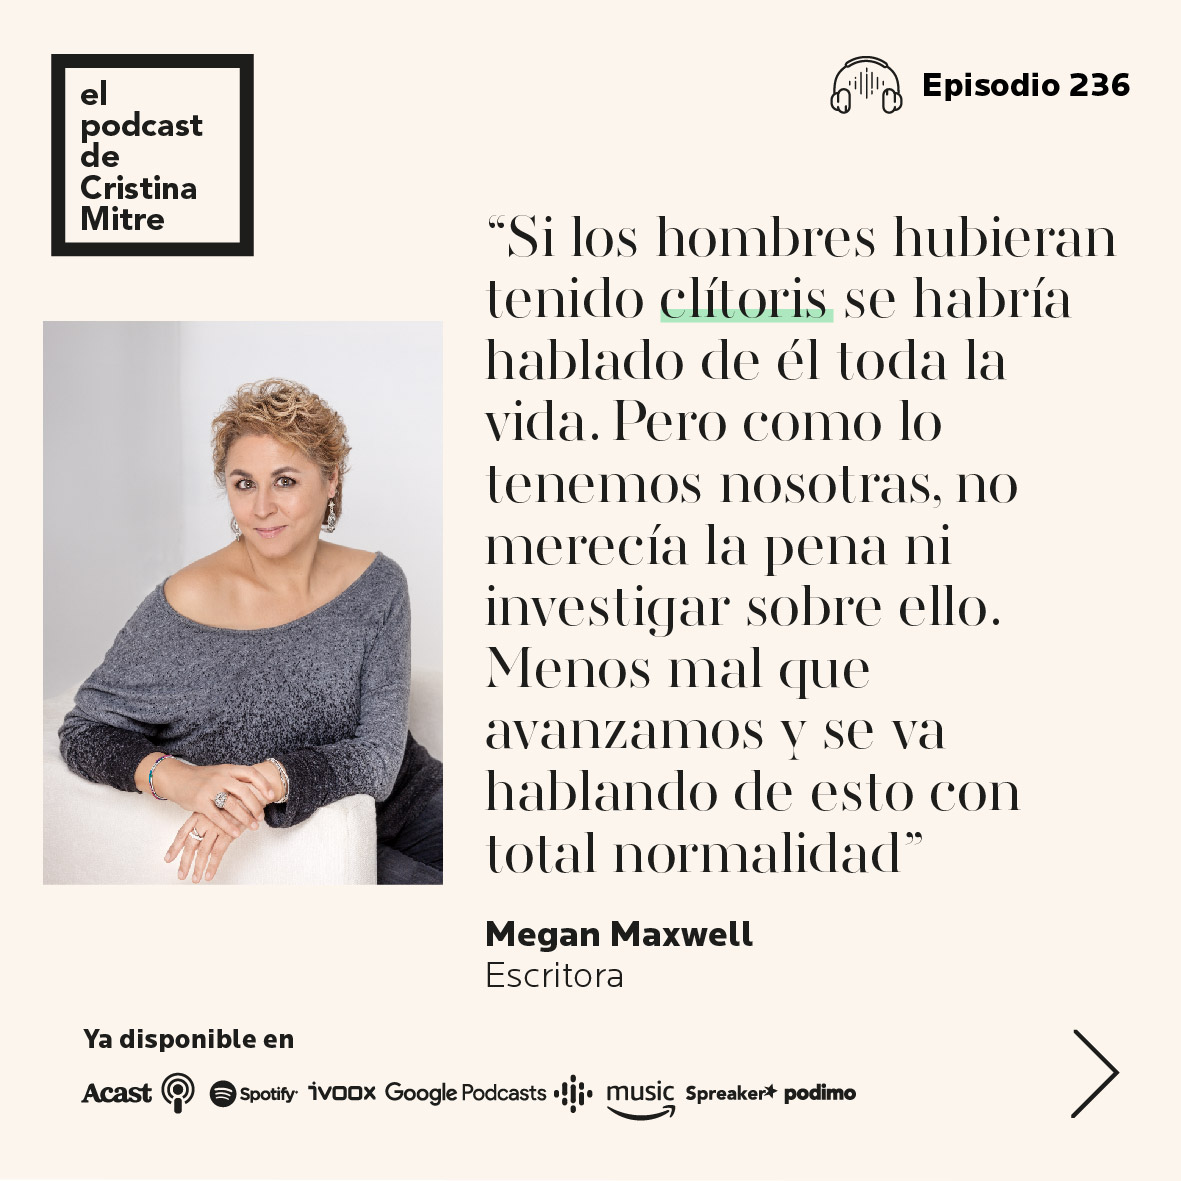 El podcast de Cristina Mitre literatura